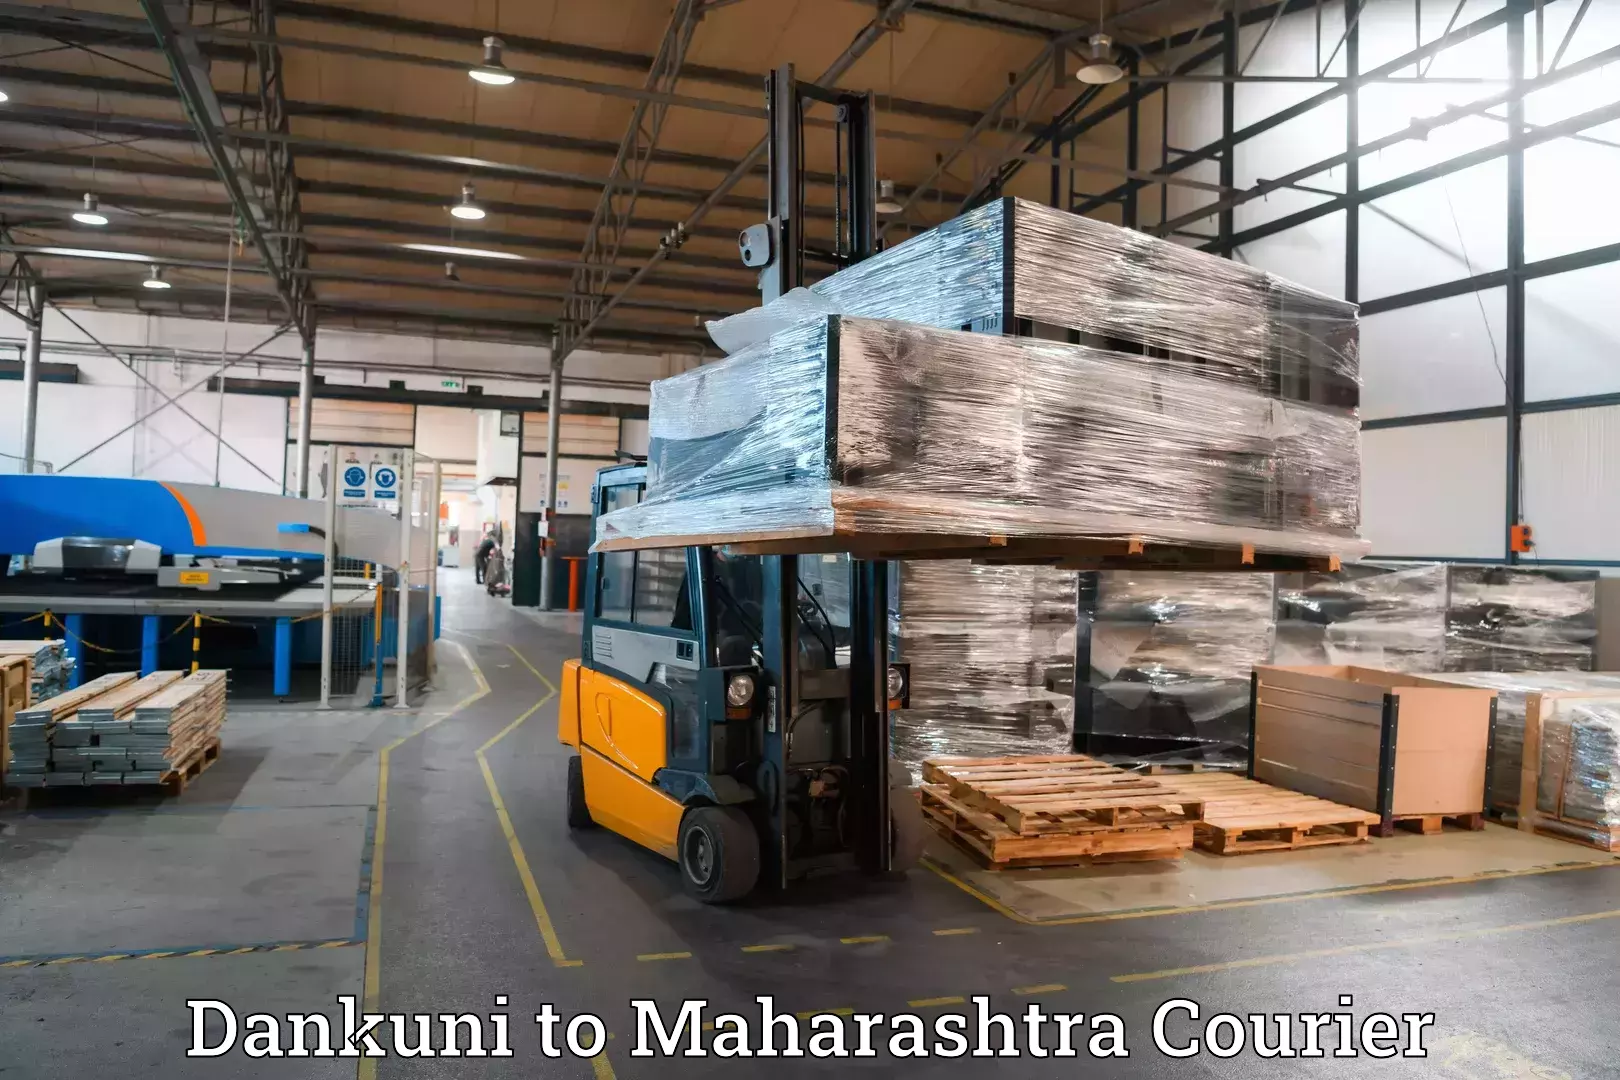 Baggage shipping experience in Dankuni to IIT Mumbai